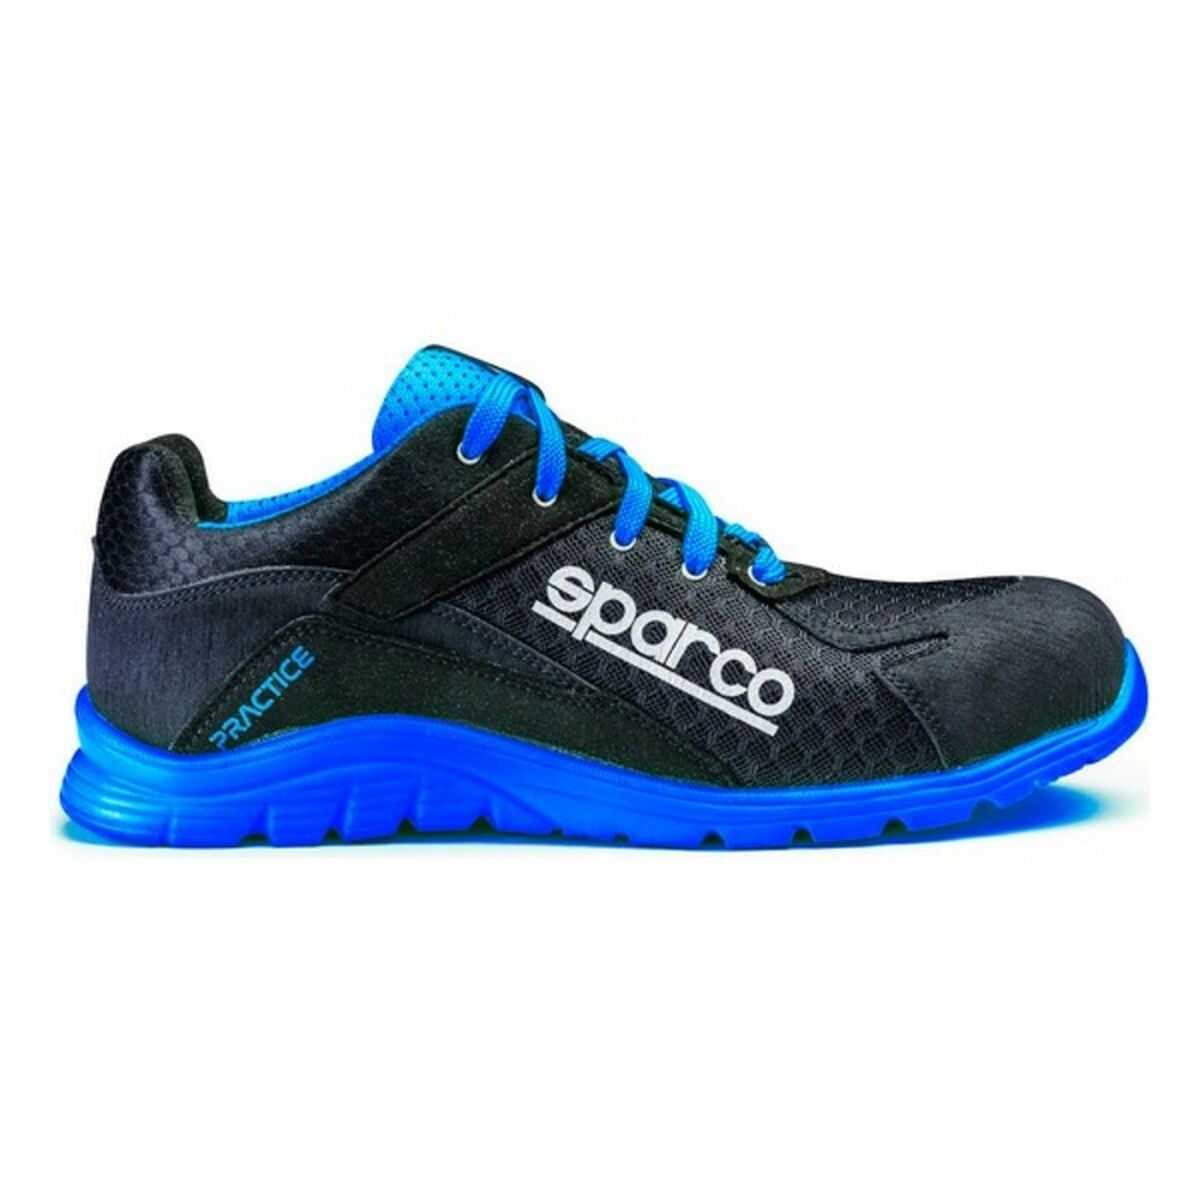 Kaufe Sicherheits-Schuhe Sparco Practice Blau/Schwarz bei AWK Flagship um € 100.00